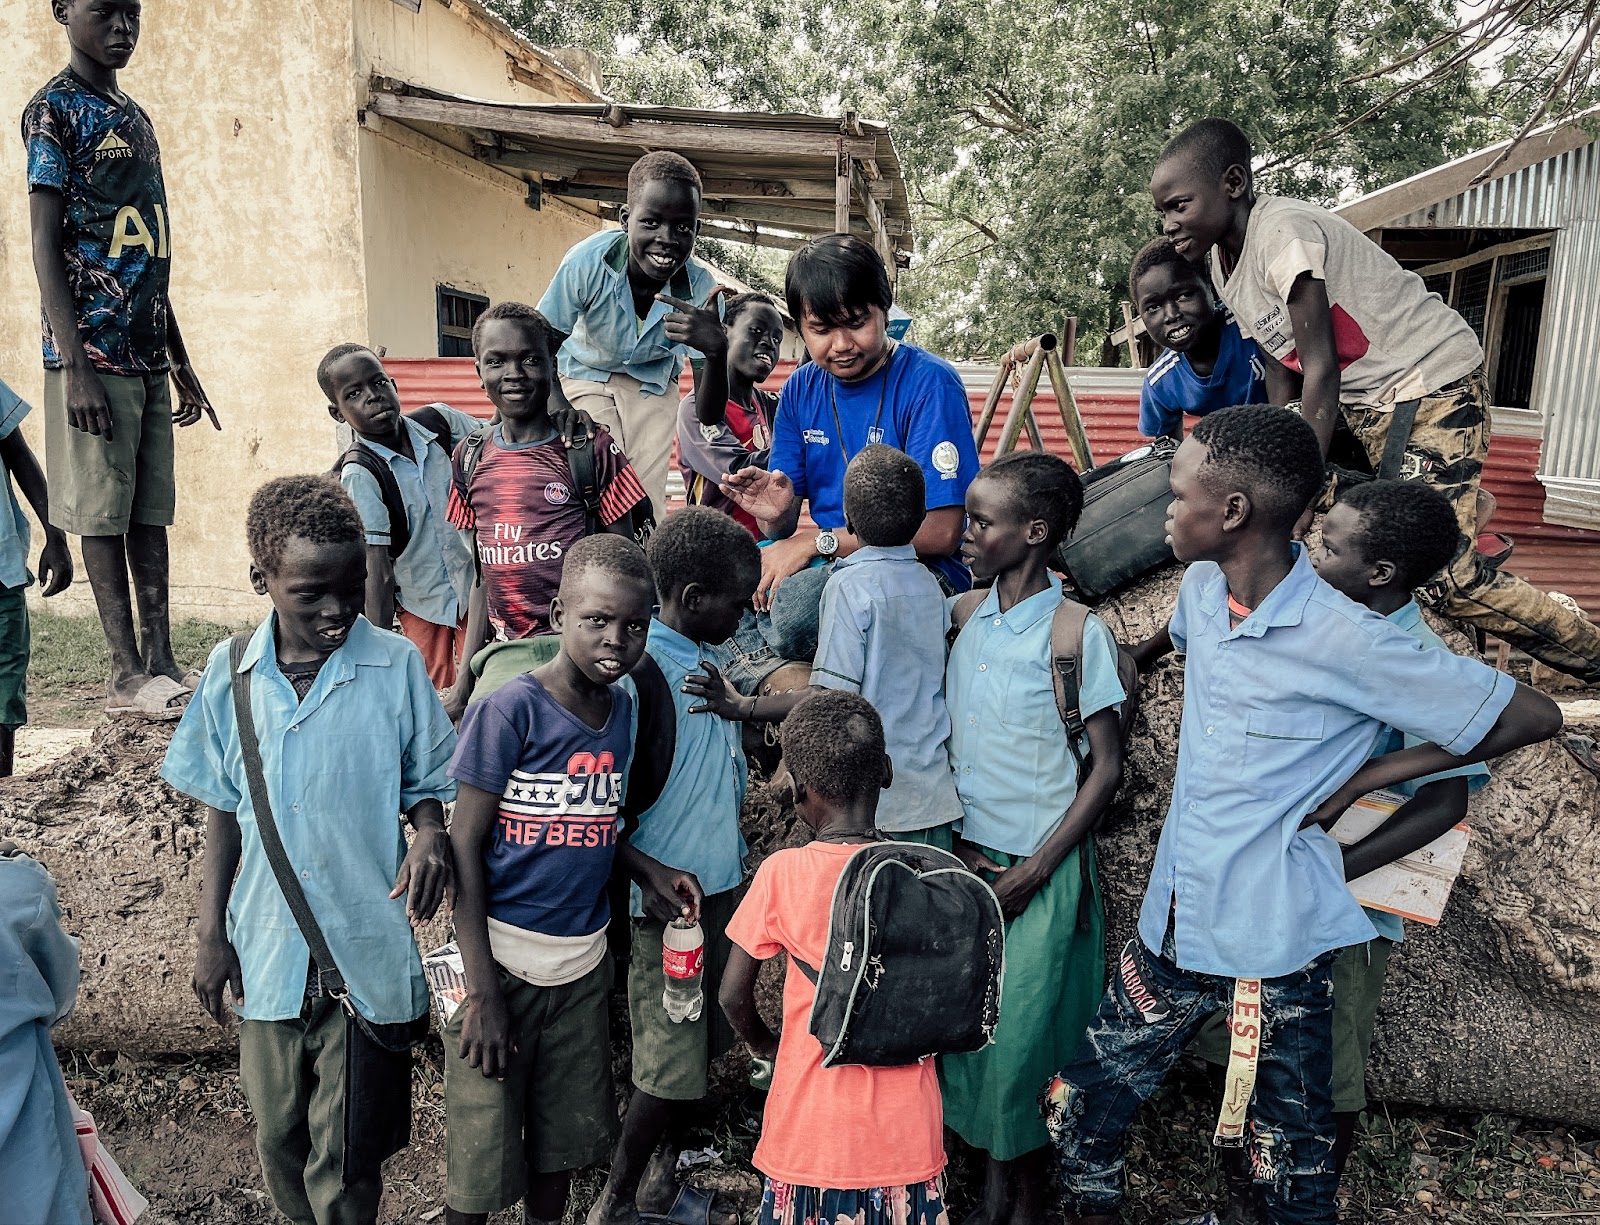 Ridwan di tengah anak-anak Sudan Selatan. (Foto: Dok. pribadi penulis)